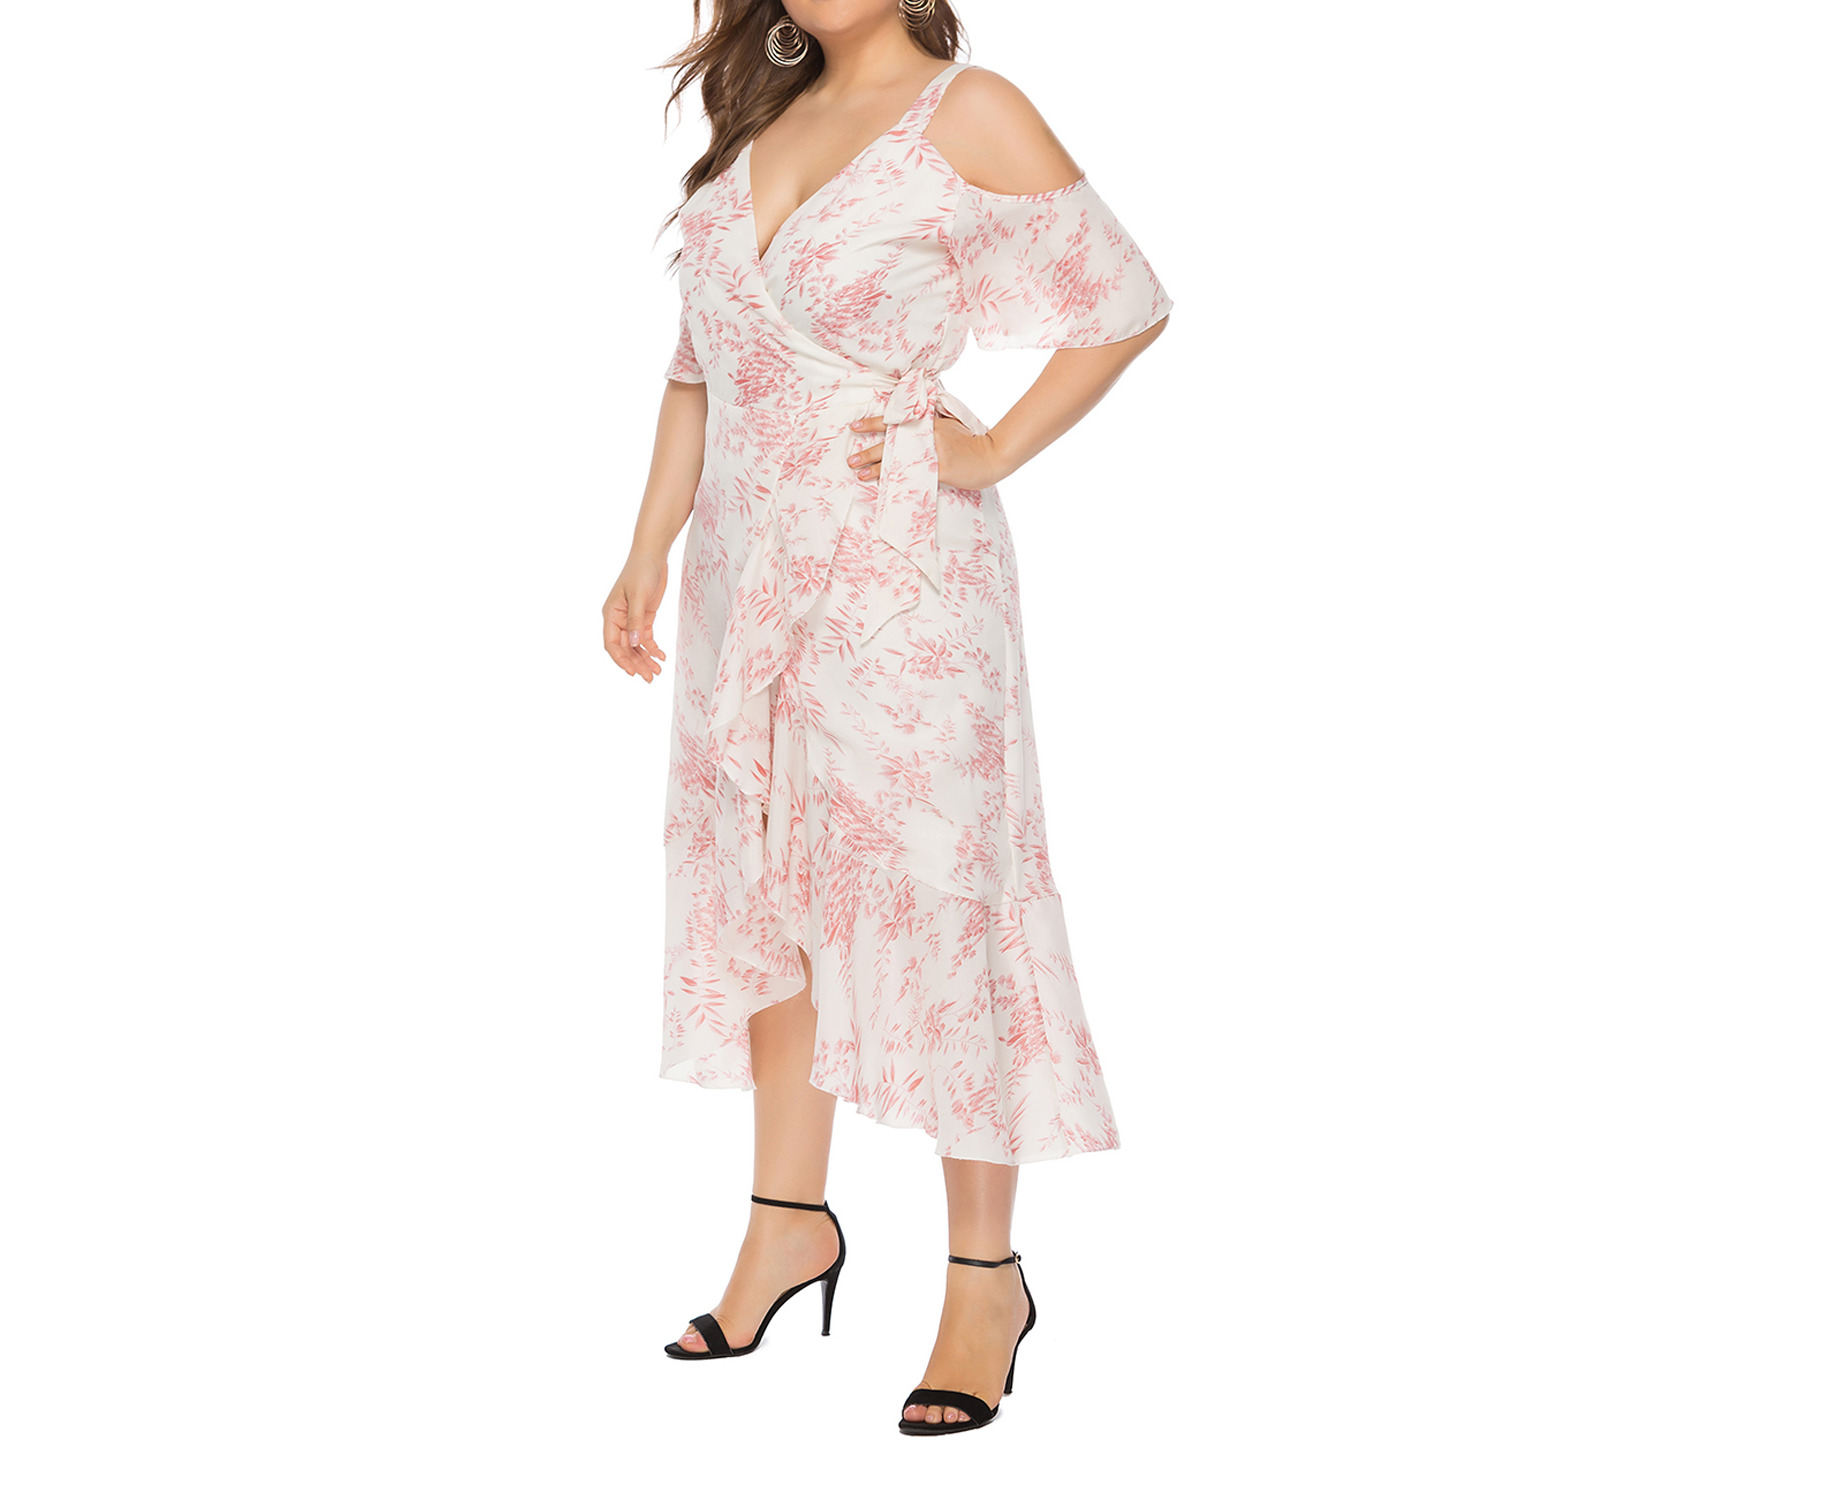 ECJ - The charm of flowers Women's Dress Pink | Catch.com.au